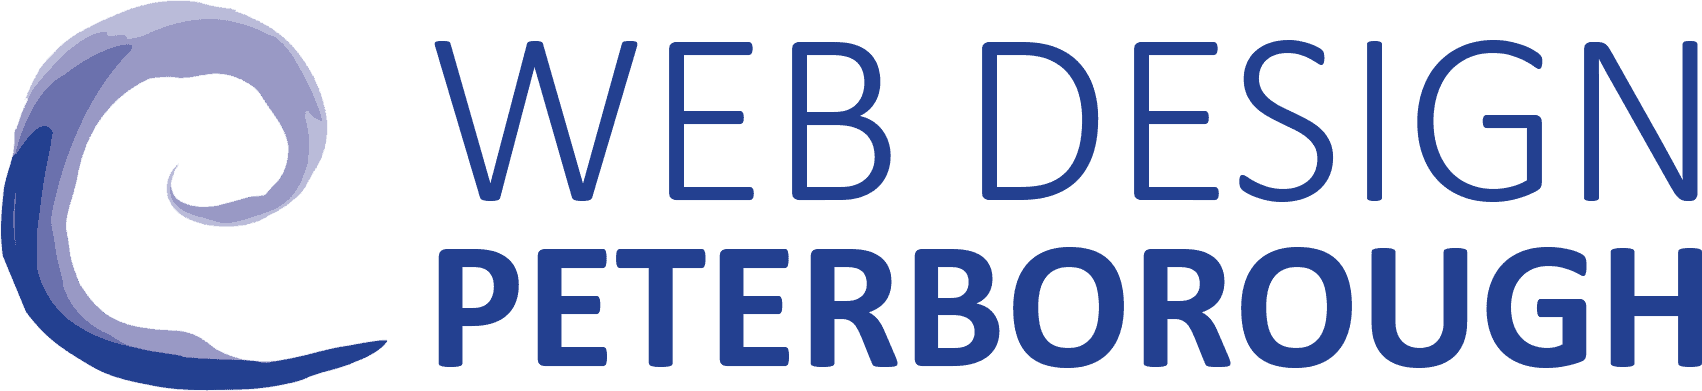 Web Design Peterborough - Optimised website design agency